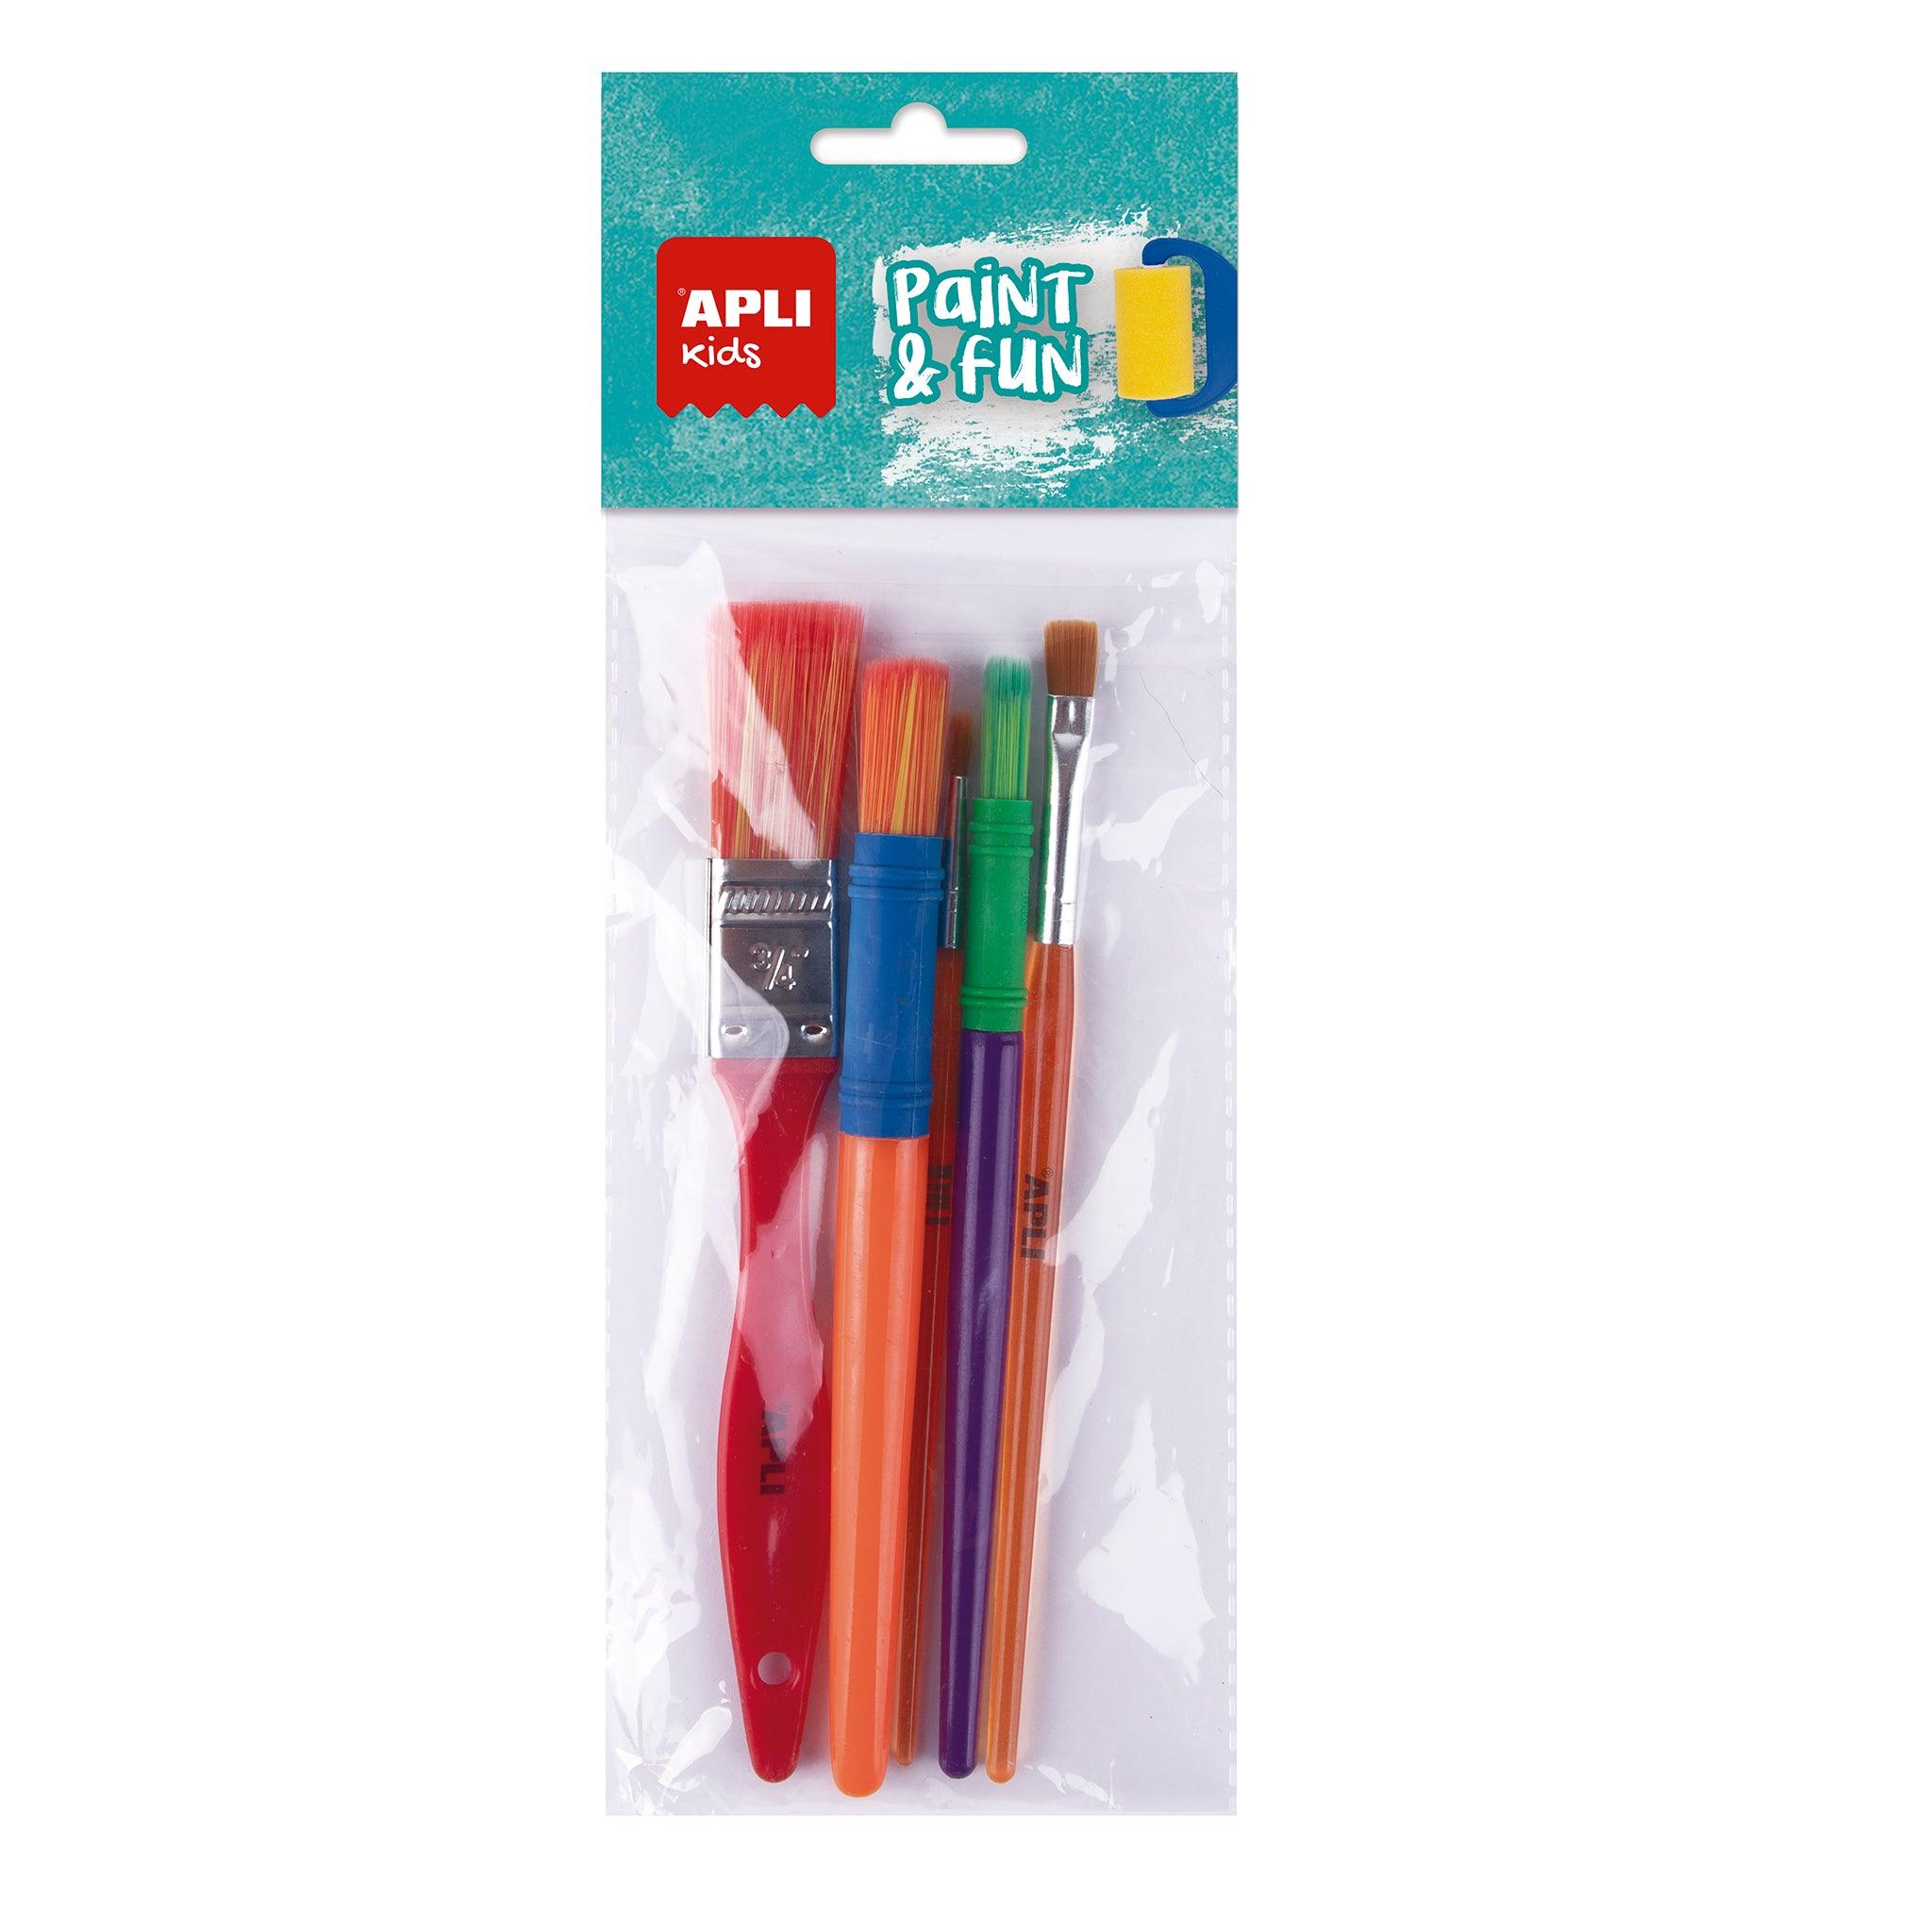 Apli Kids: set of brushes 5 pcs.